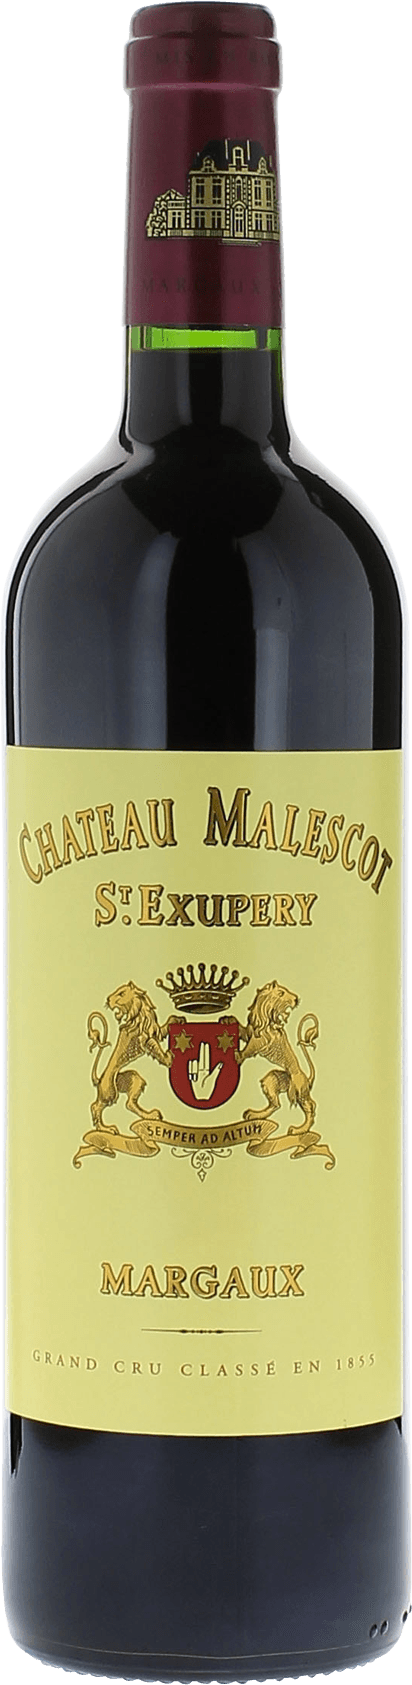 Malescot saint exupery 1983 3me Grand cru class Margaux, Bordeaux rouge